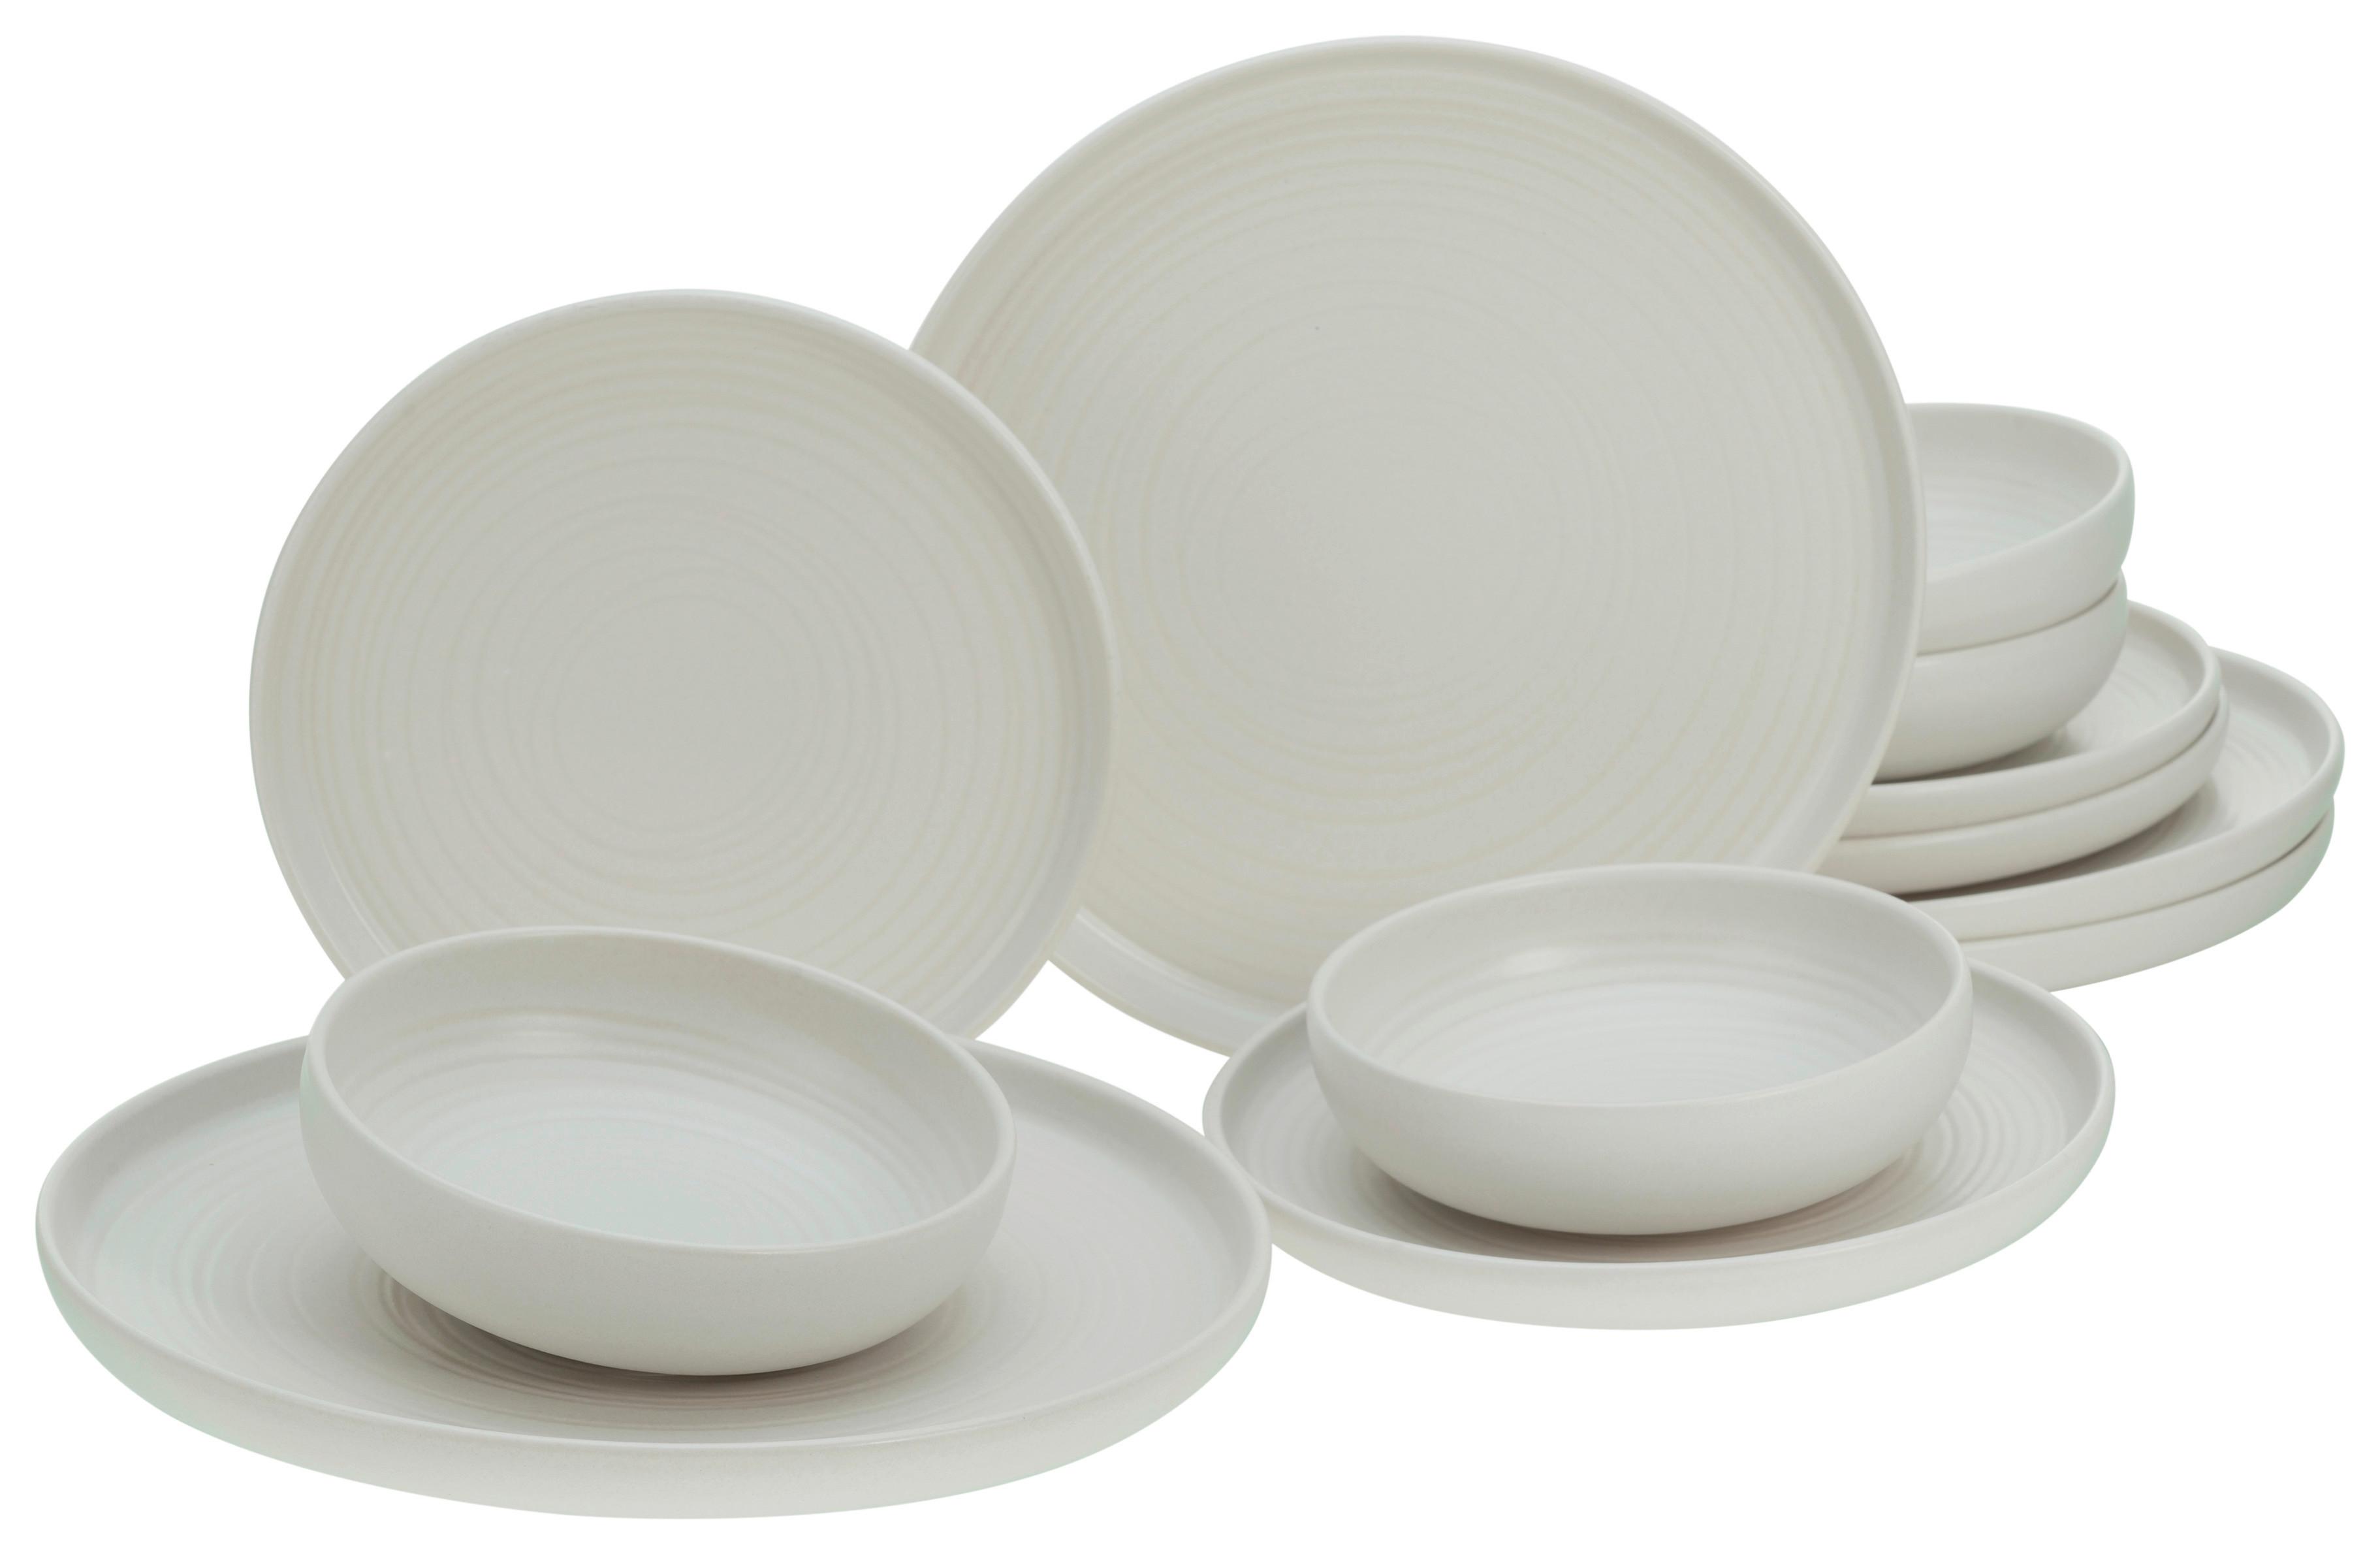 ZASTAWA STOŁOWA UNO LAVA STONE - biały, Modern, ceramika (43/40/37,5cm) - Creatable